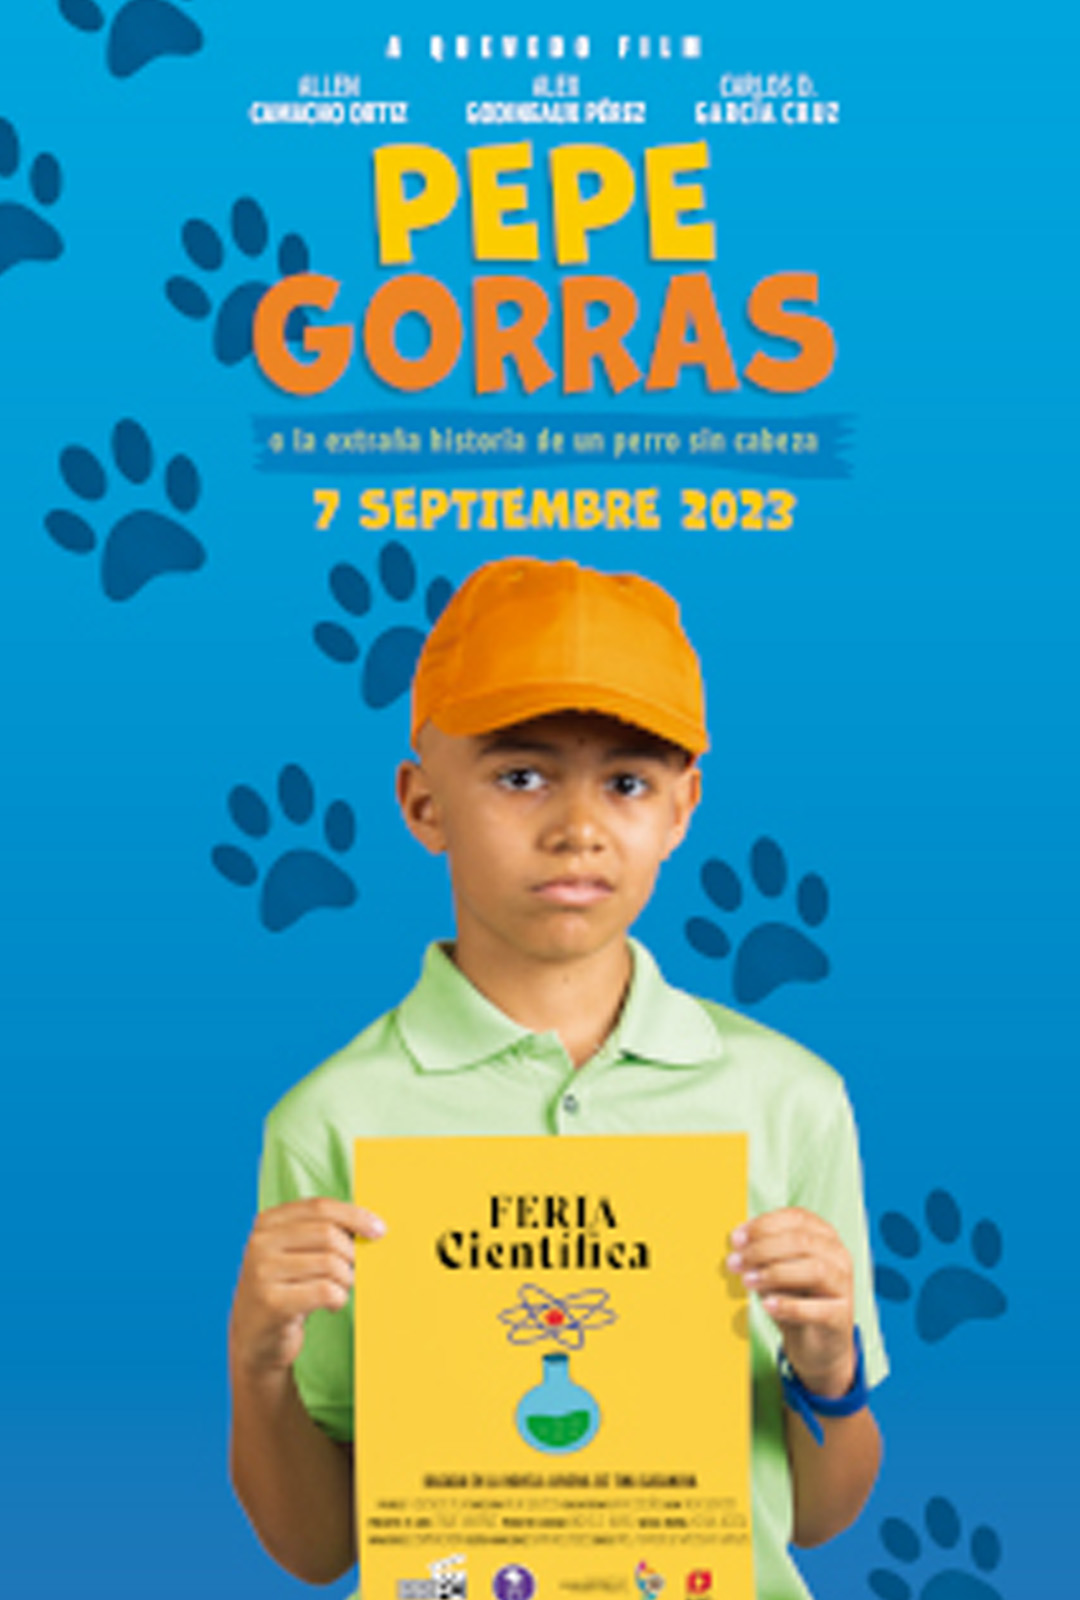 Movie Poster: Pepe Gorras